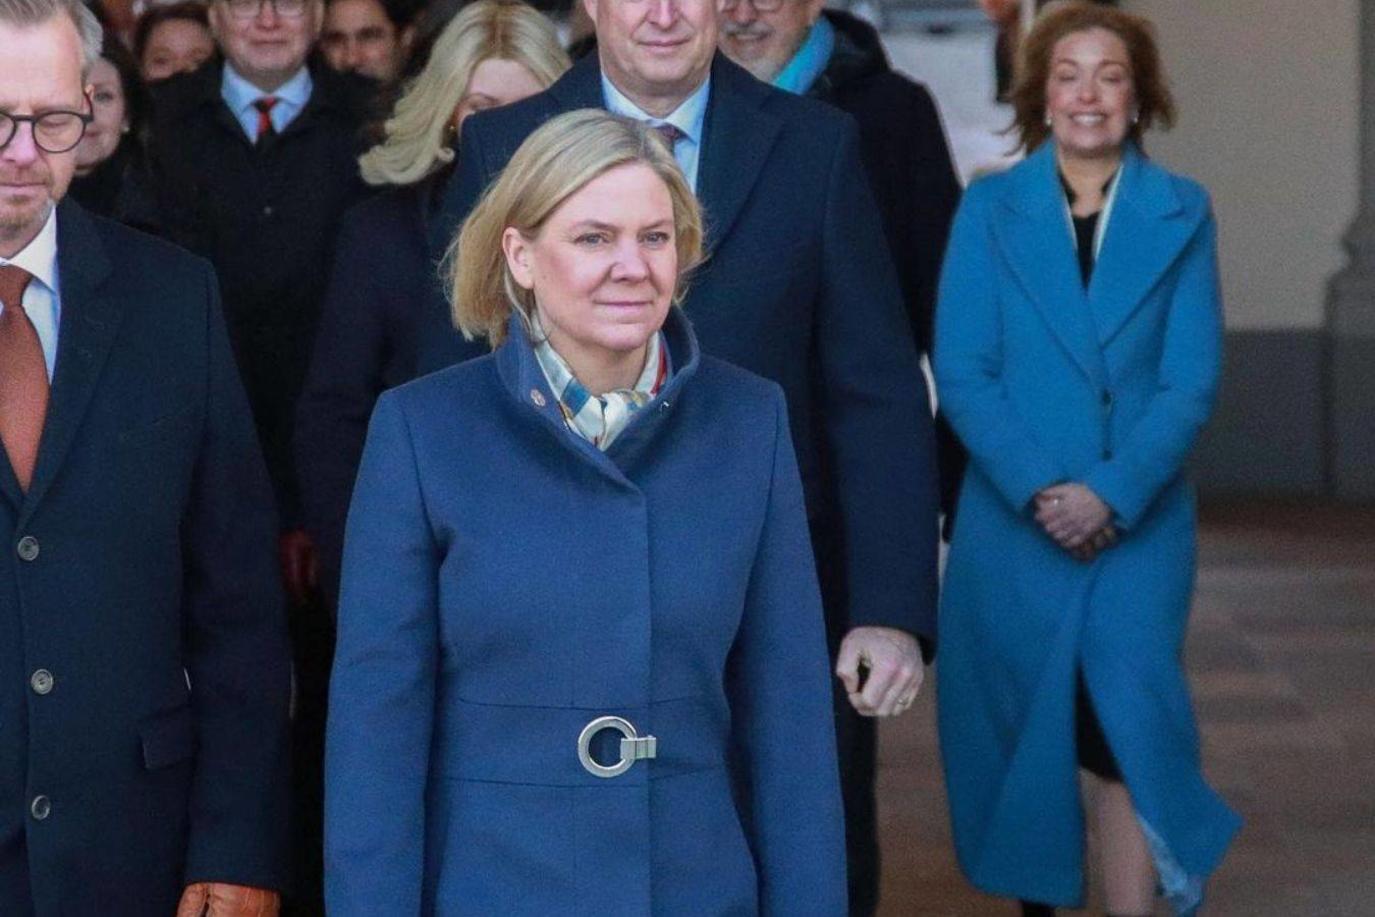 ماجدالينا أندرسون رئيس وزراء الحكومة السويدية - من الصفحة الرسمية لإنستغرام رئيسة الوزراء السويدية ماجدالينا أندرسون